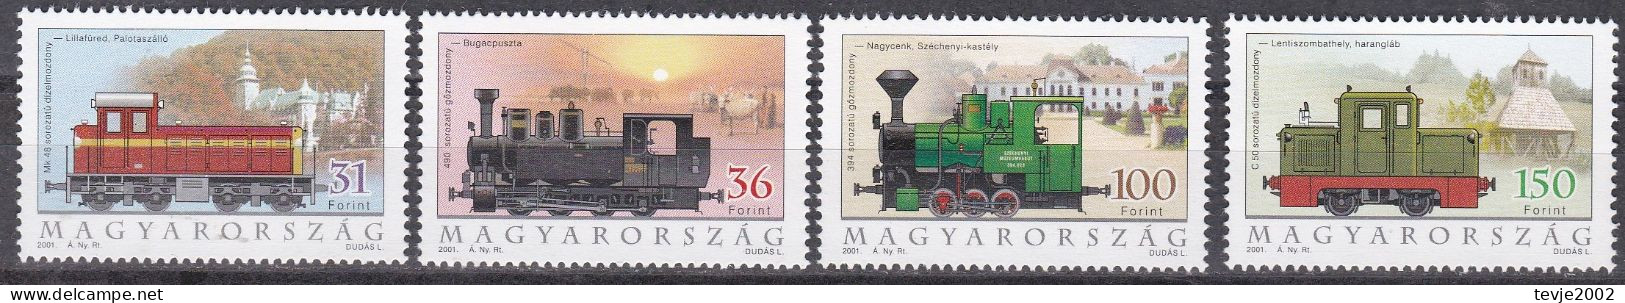 Ungarn 2001 - Mi.Nr. 4662 - 4665 - Postfrisch MNH - Eisenbahnen Railways Lokomotiven Locomotives - Trains